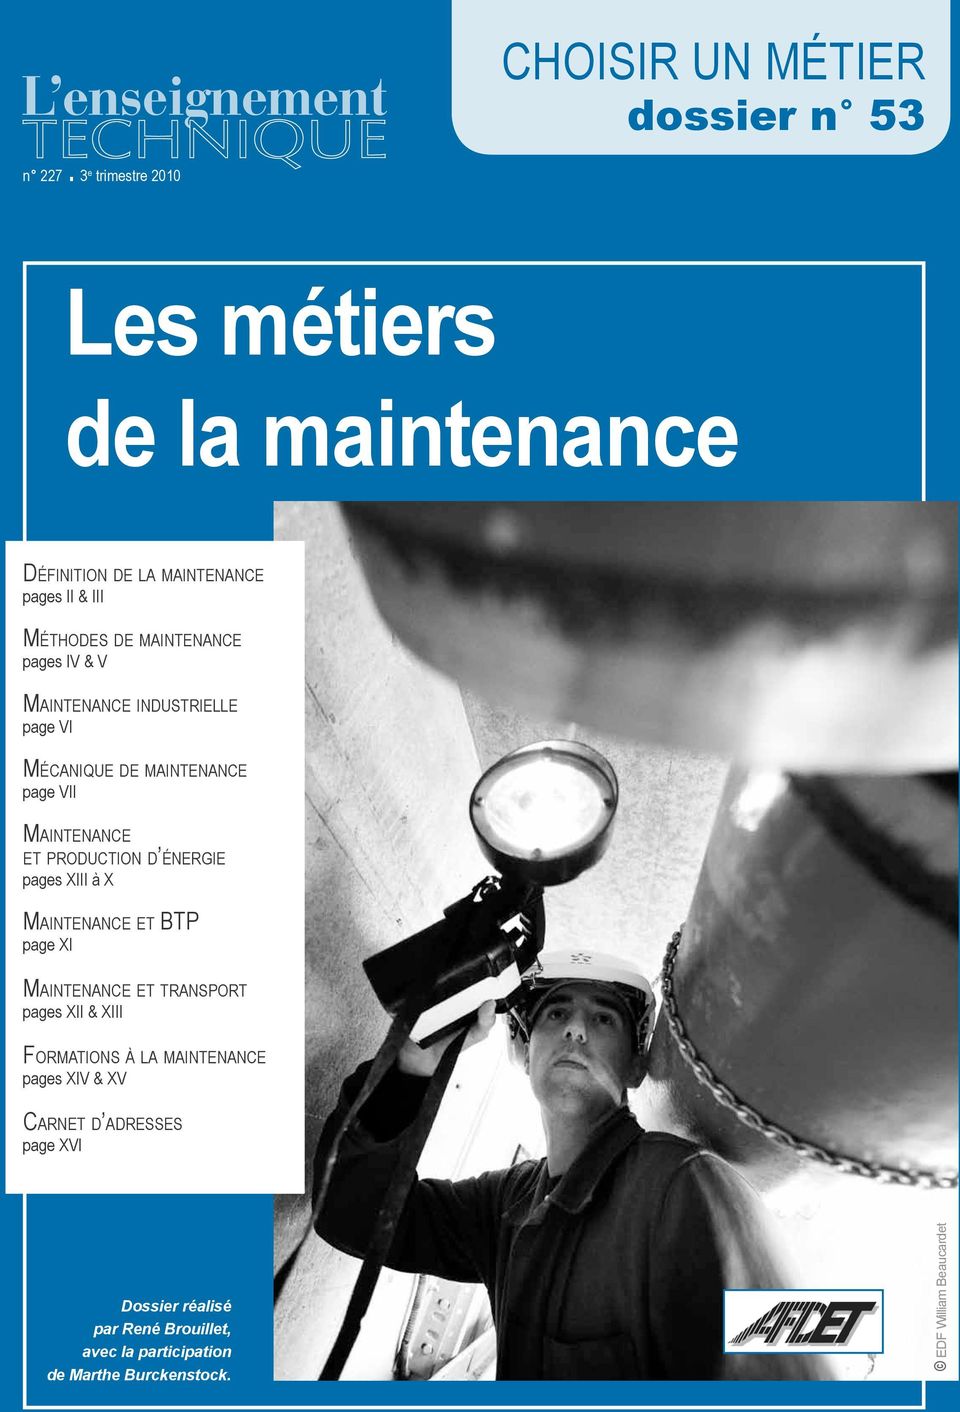 Maintenance industrielle page VI Mécanique de maintenance page VII Maintenance et production d énergie pages XIII à X Maintenance